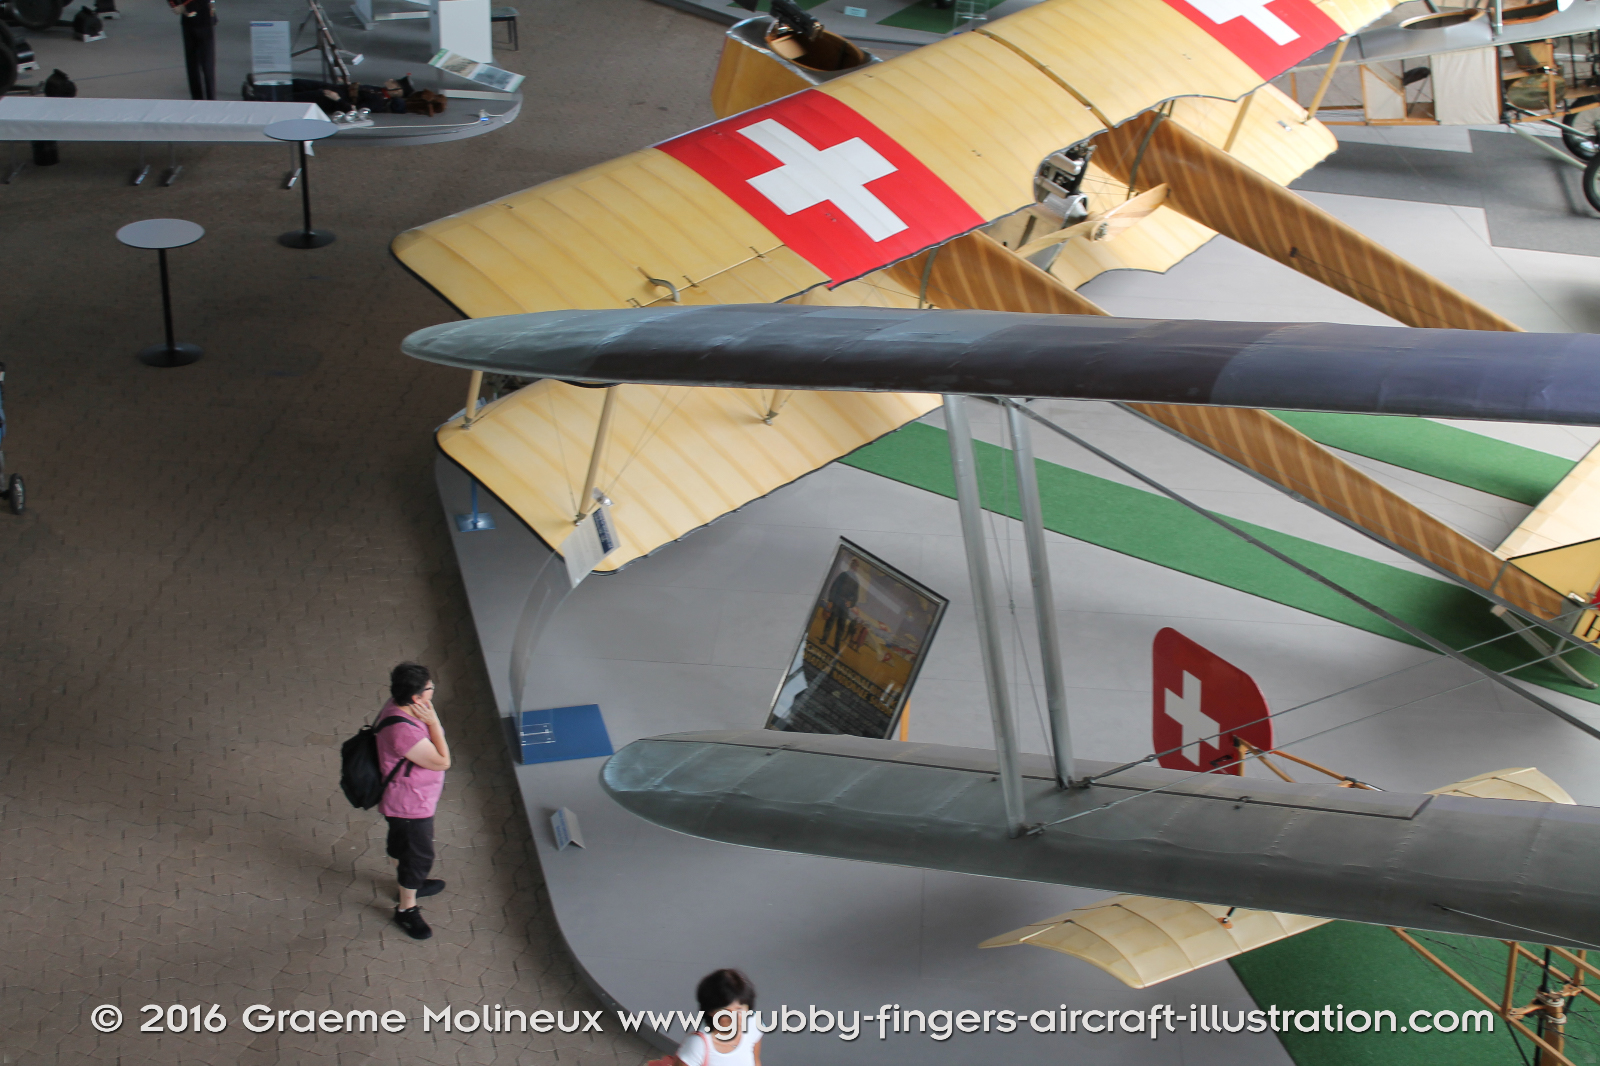 NIEUPORT_N-28_Swiss_Air_Force_Museum_2015_07_GrubbyFingers